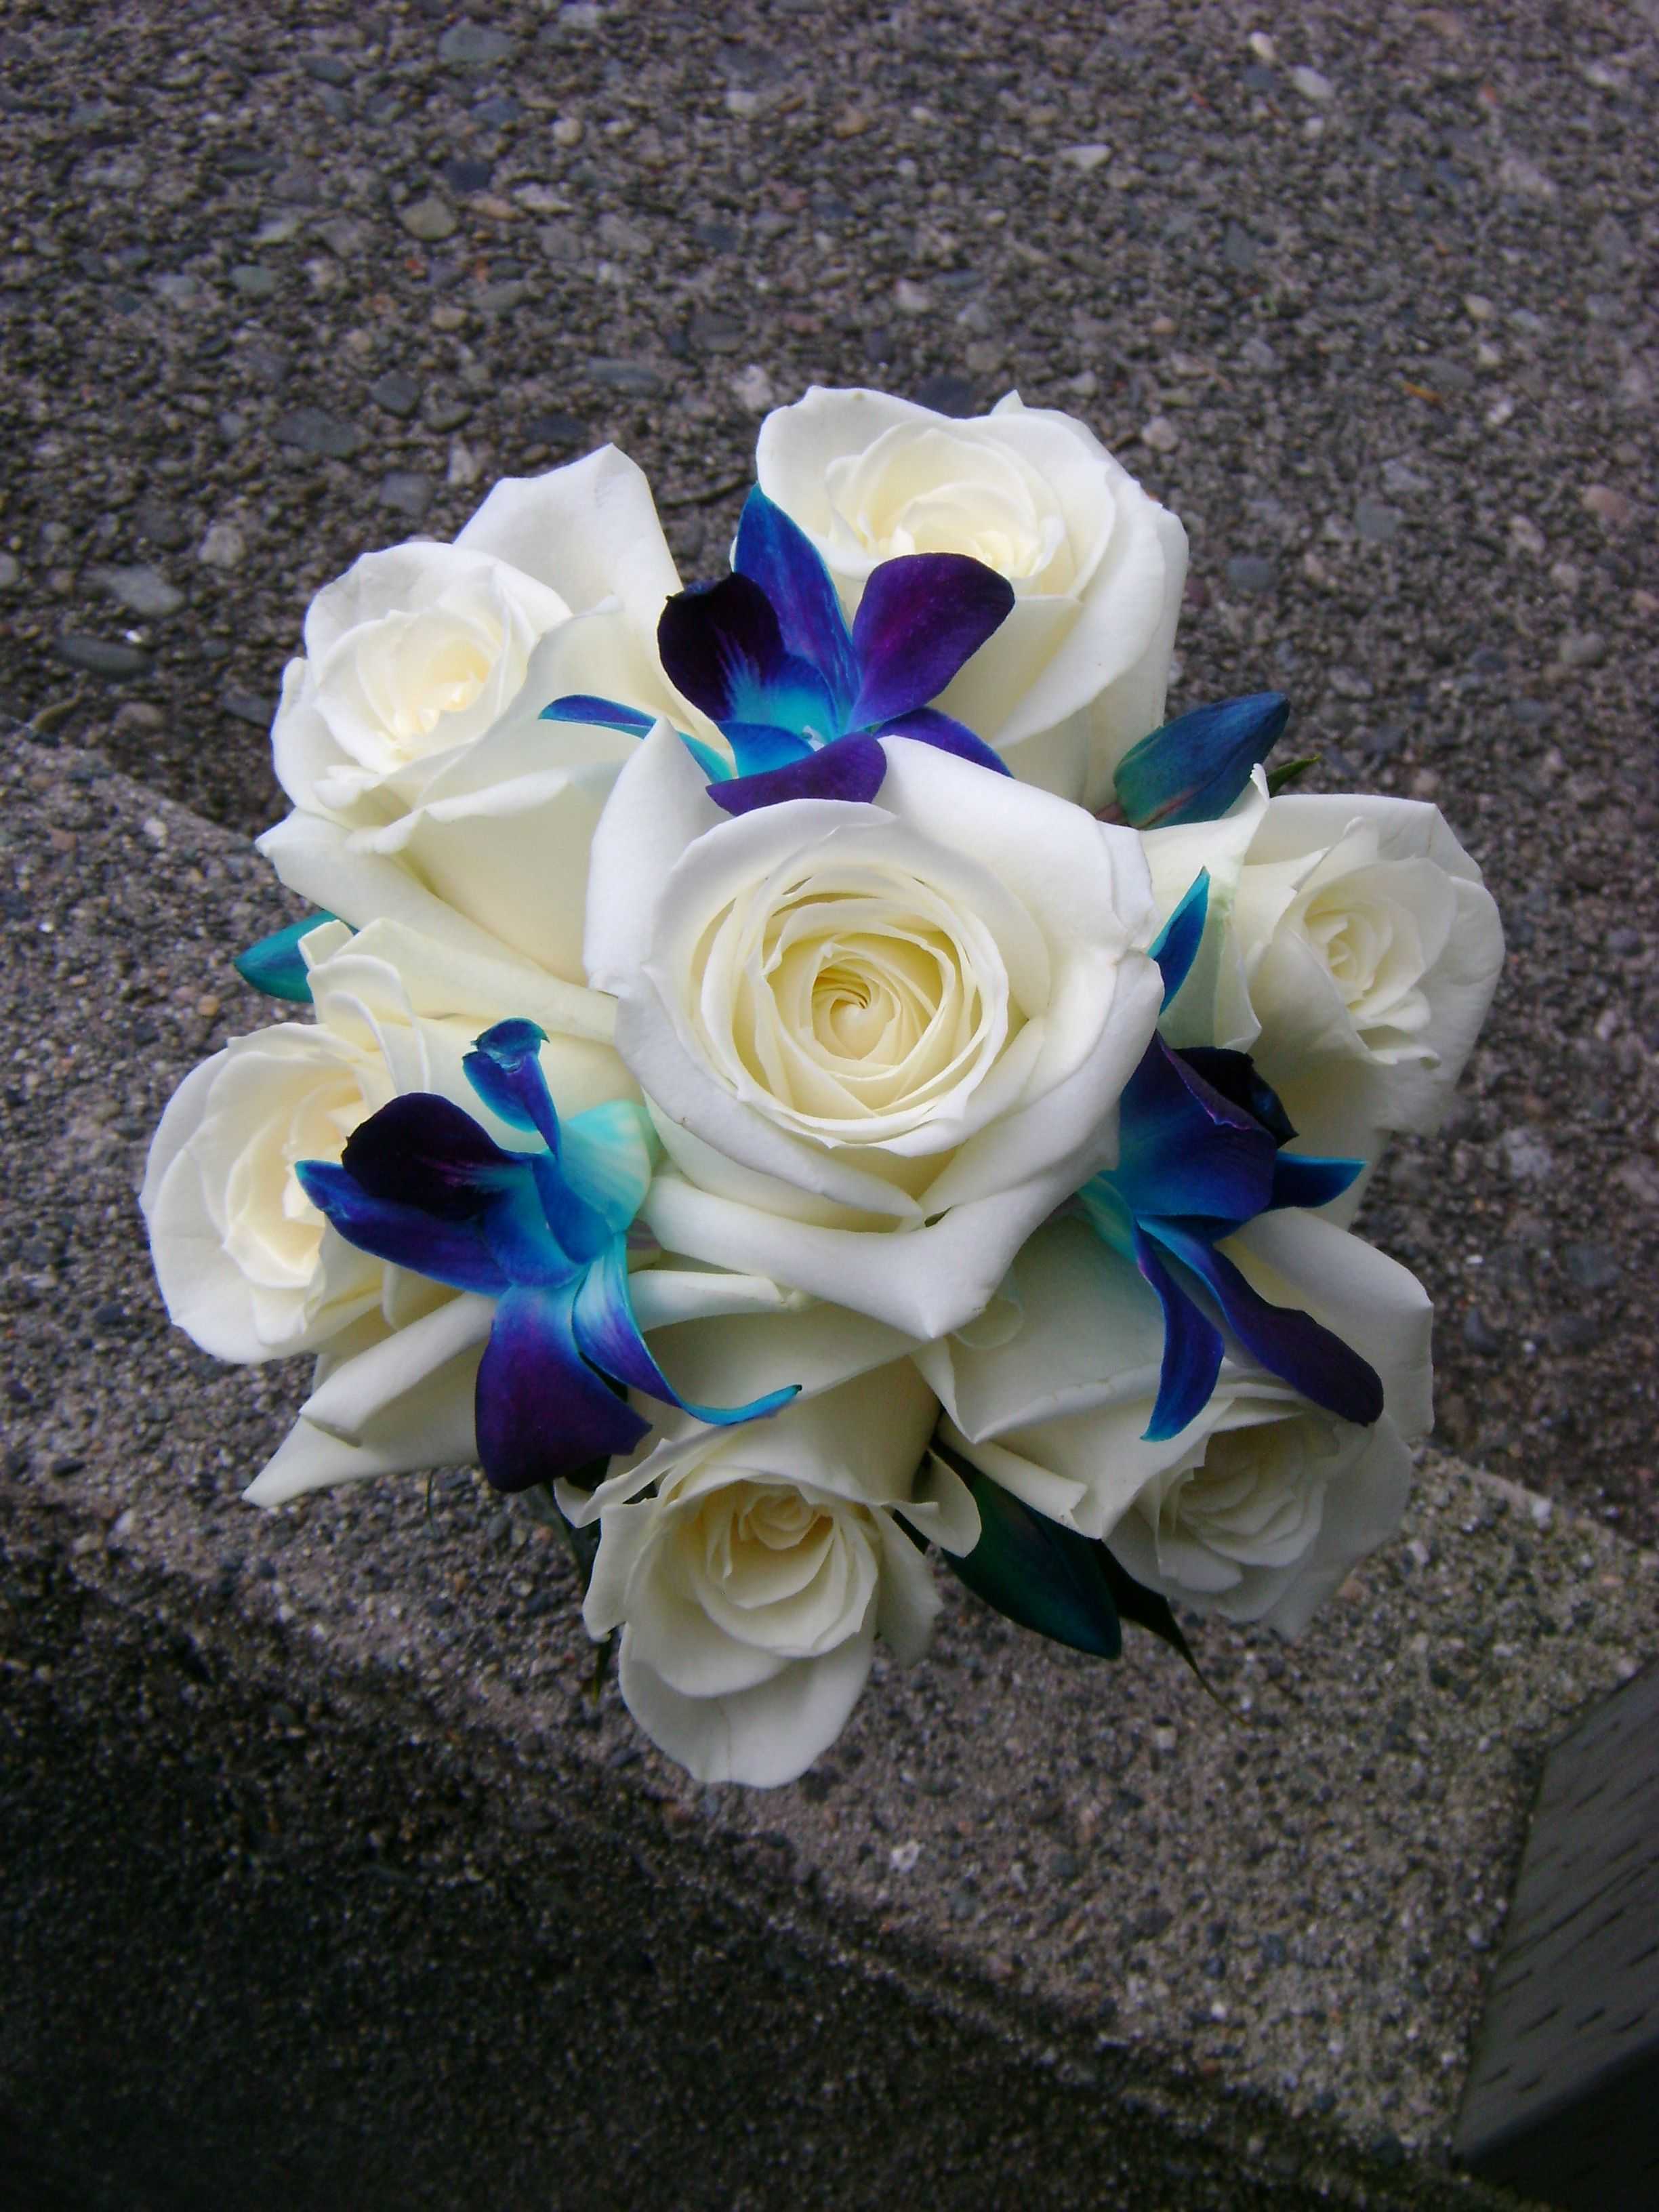 Голубой свадебный букет для невесты - ак выбрать композицию на что опираться при подборе ее цветовой палитры какие сине-голубые цветы пользуются особым спросом у новобрачных Особенности выбора аксессуаров для удачного декора